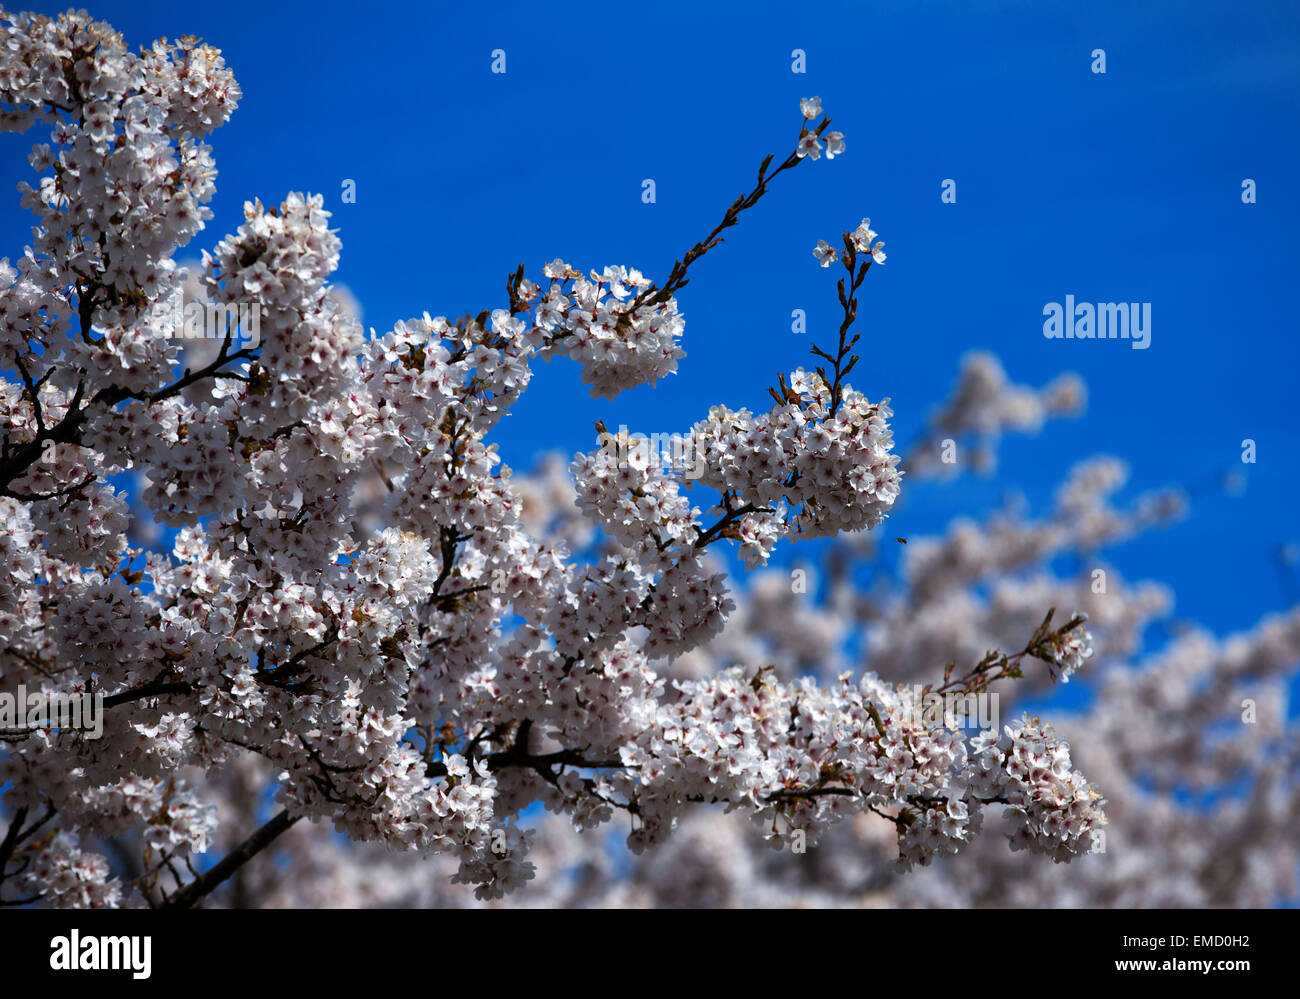 Wismar in Germania. Xx Apr, 2015. La fioritura di una ciliegia giapponese albero a Buergerpark a Wismar, Germania, 20 aprile 2015. Fiori di Ciliegio sono uno dei simboli più importanti della cultura giapponese e significano la bellezza, risveglio e caducità. Foto: Jens Buettner/dpa/Alamy Live News Foto Stock